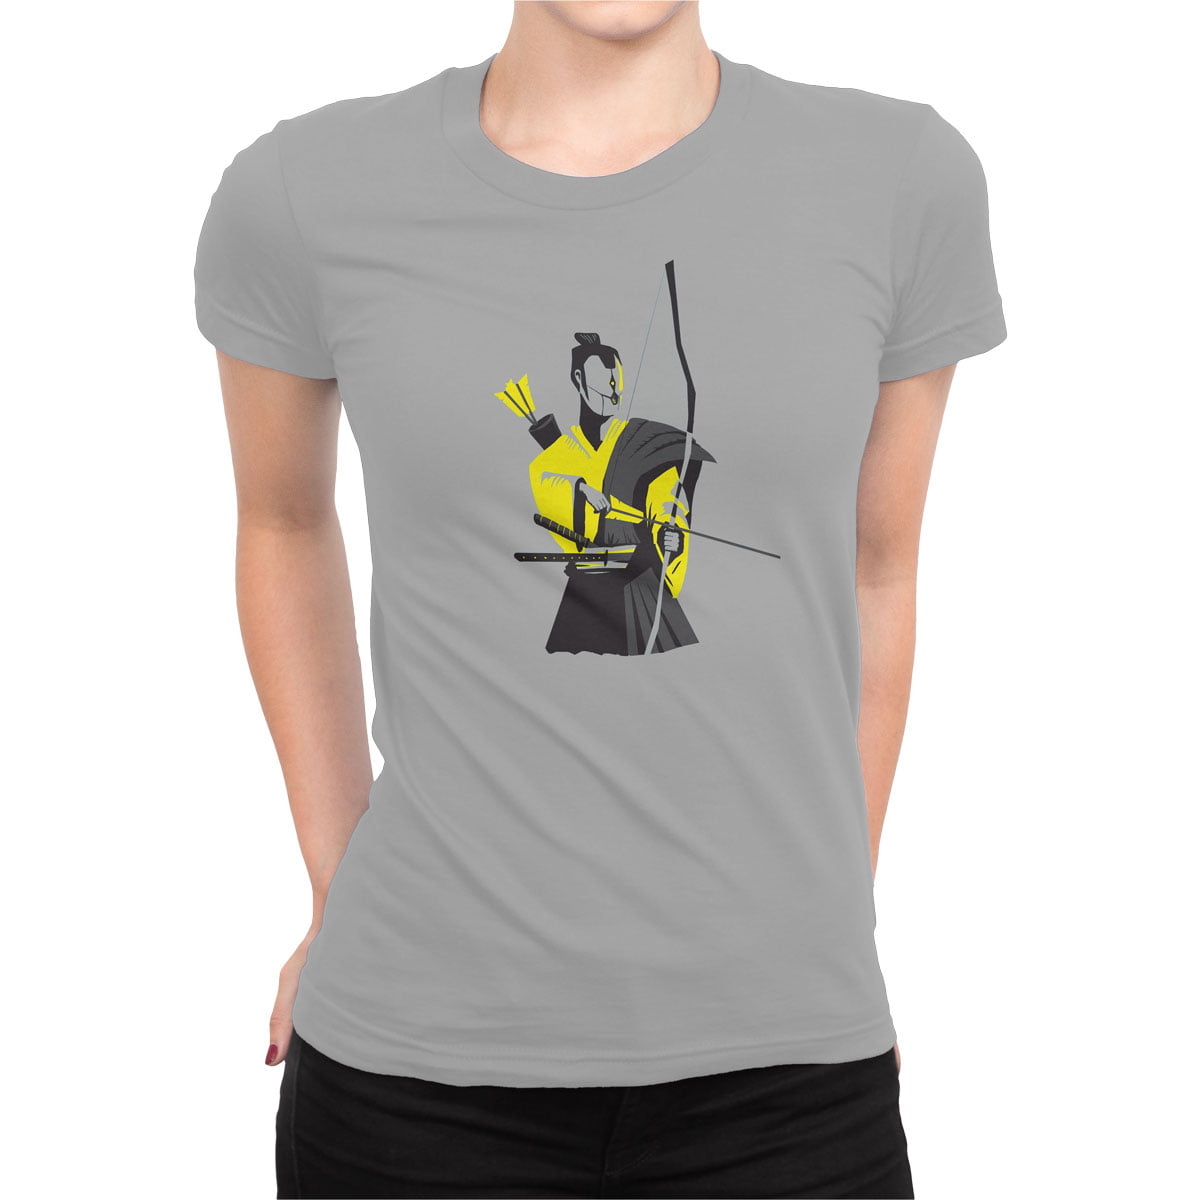 Cyberpunk 2 shirt g kadin - cyberpunk no2 baskılı kadın t-shirt - figurex